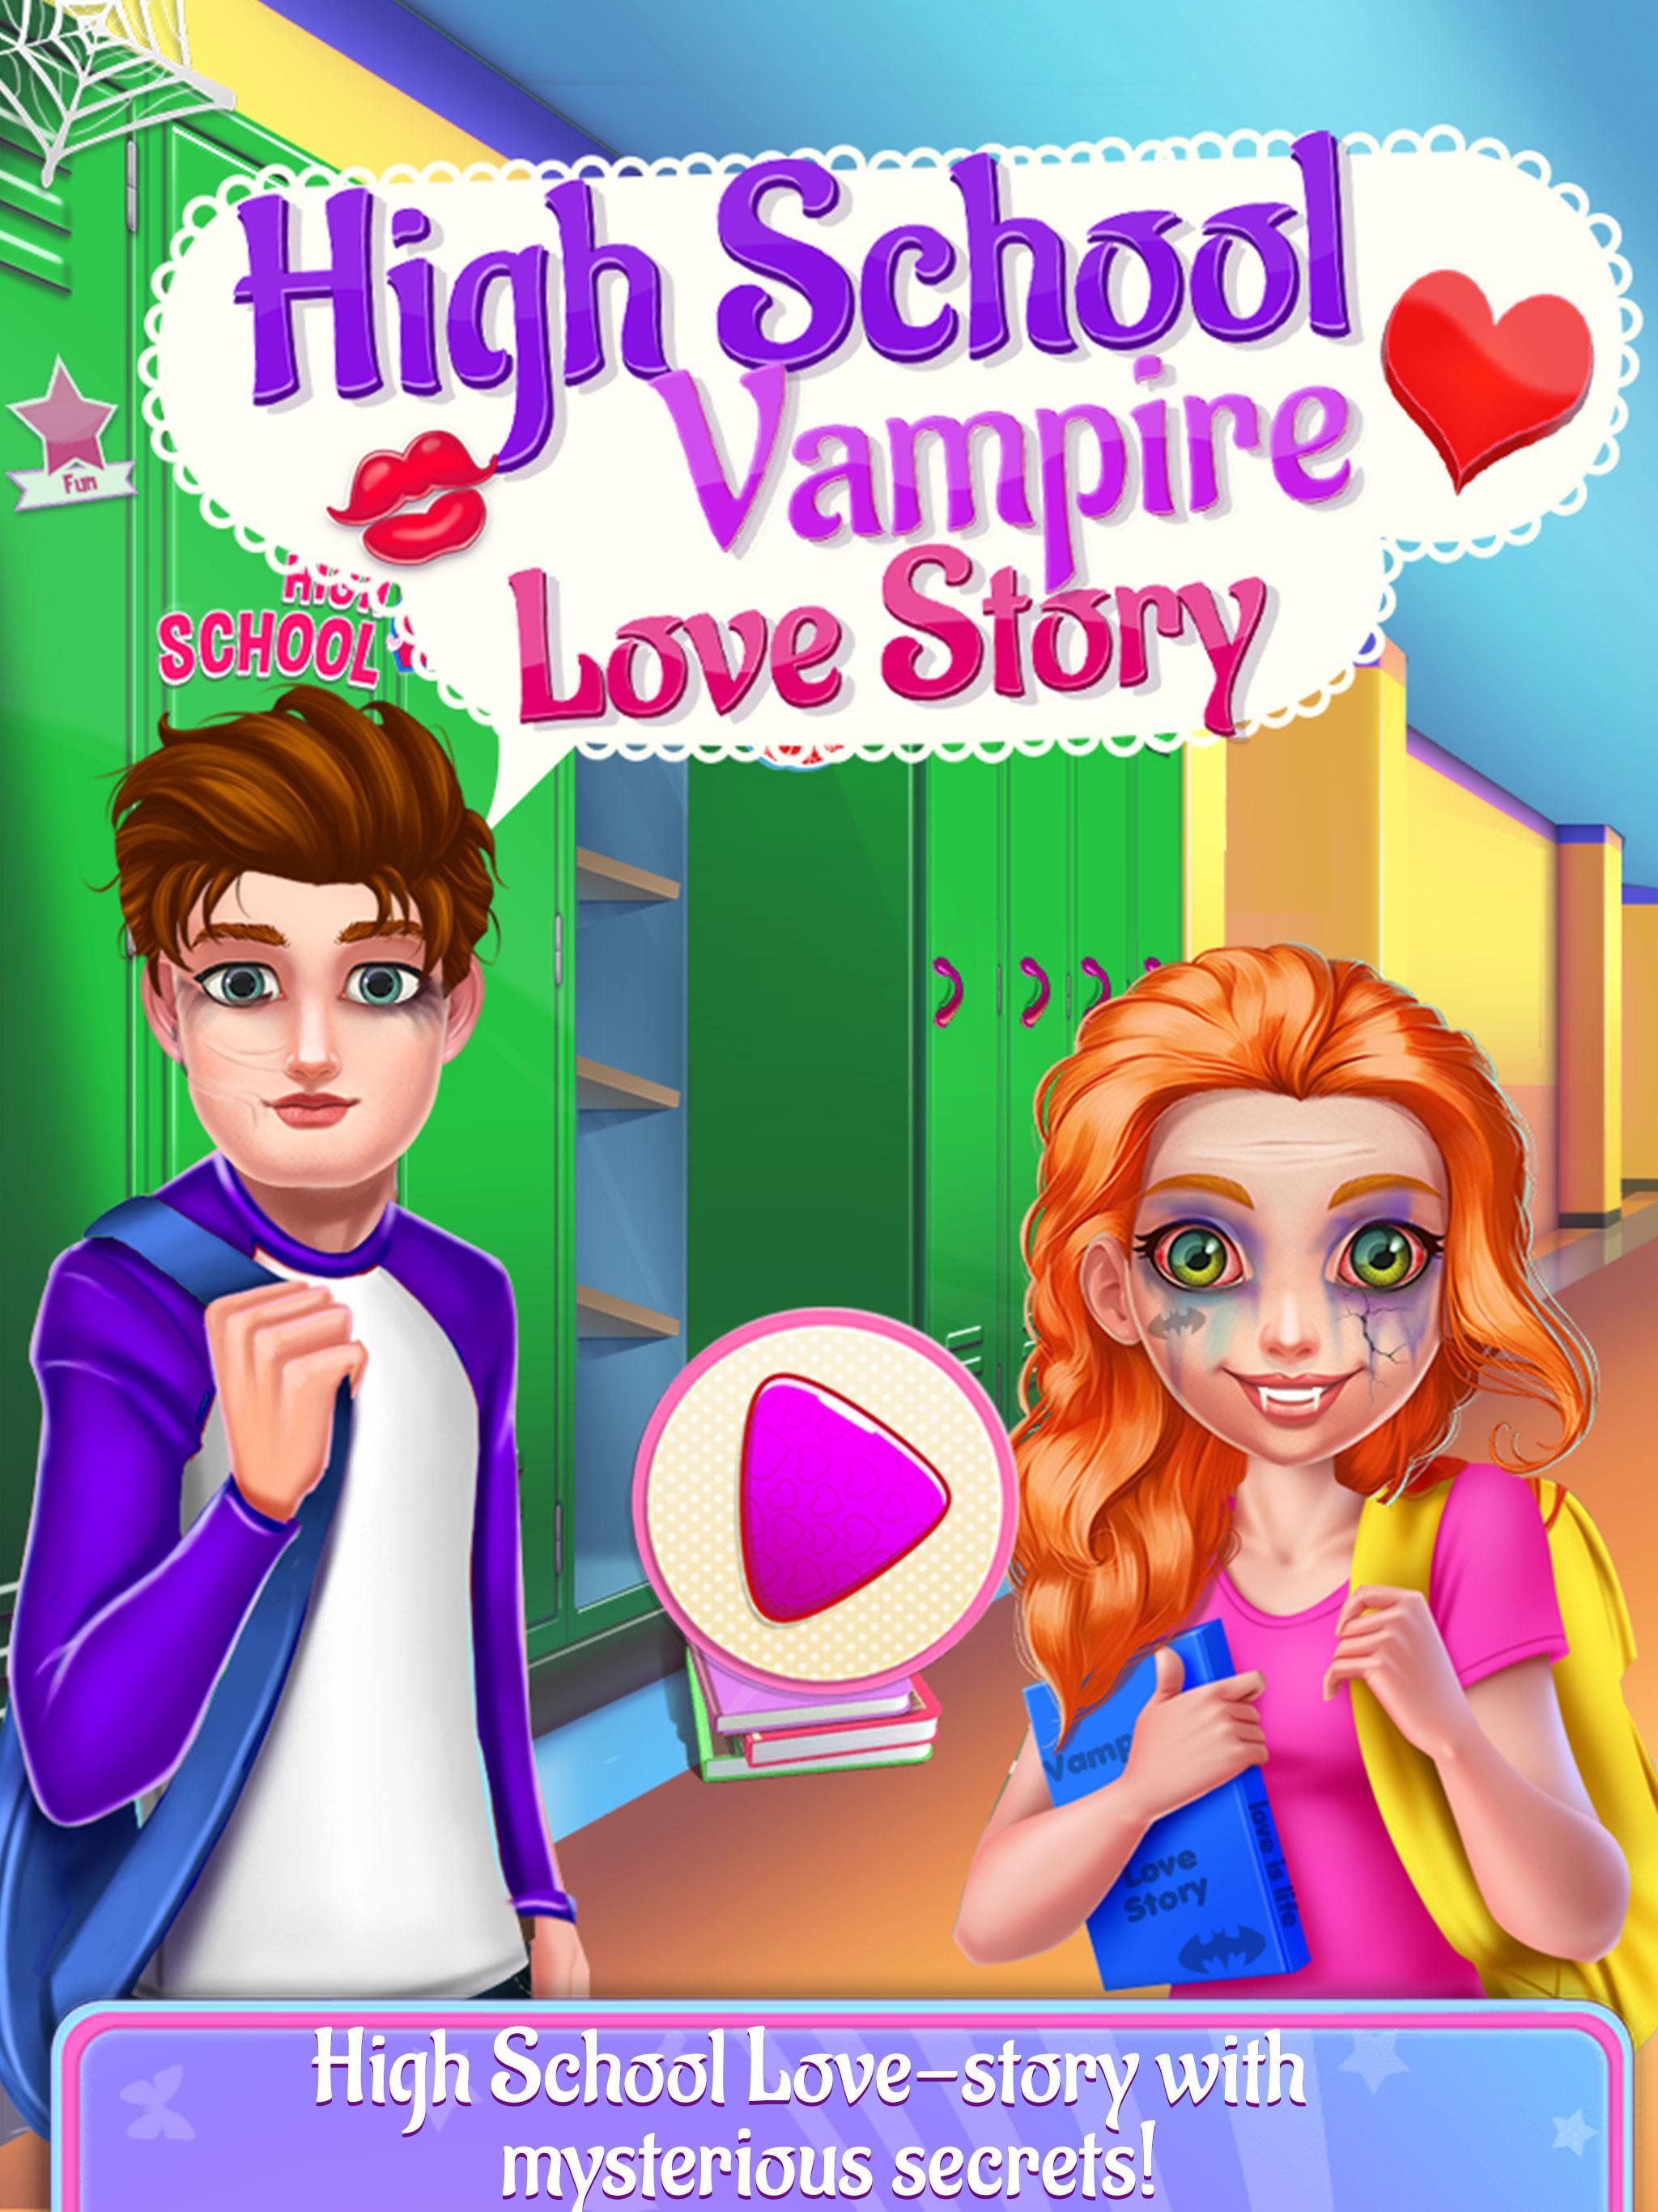 Vampire love story games. Vampire Love story. High School Vampire Love. Vampire Love story игра.